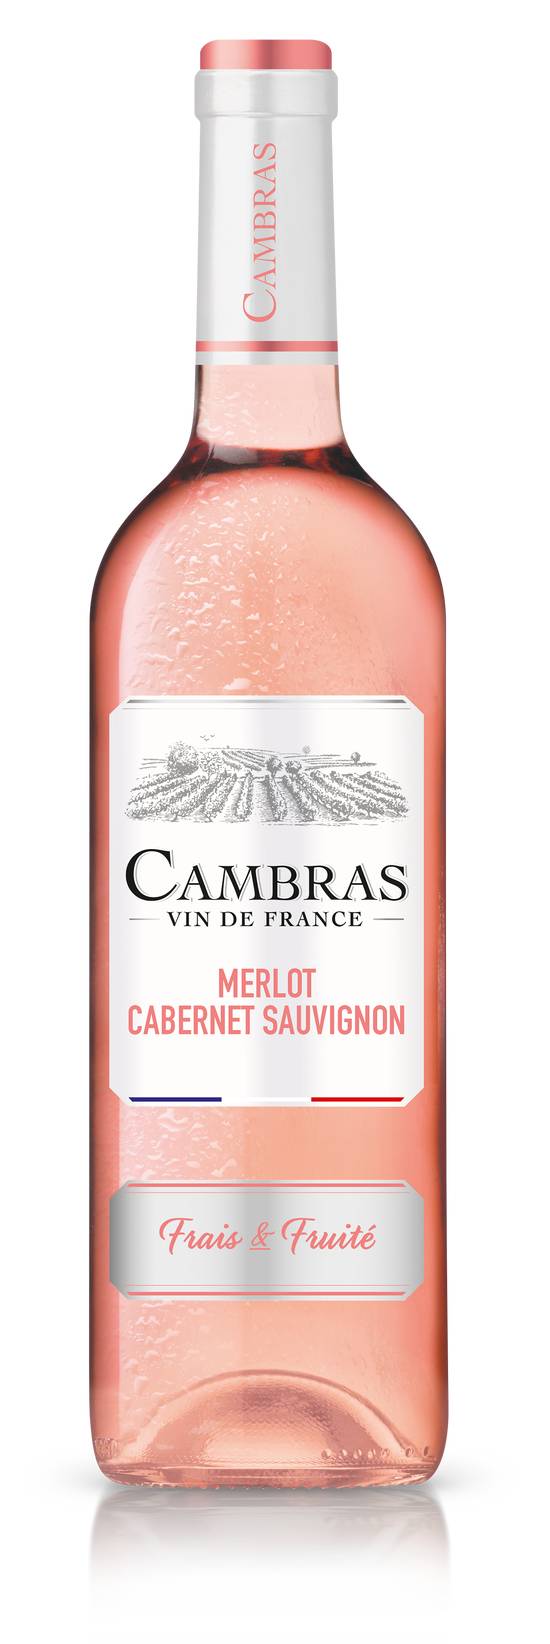 Cambras - Vdf merlot / cabernet sauvignon rose (750 ml)